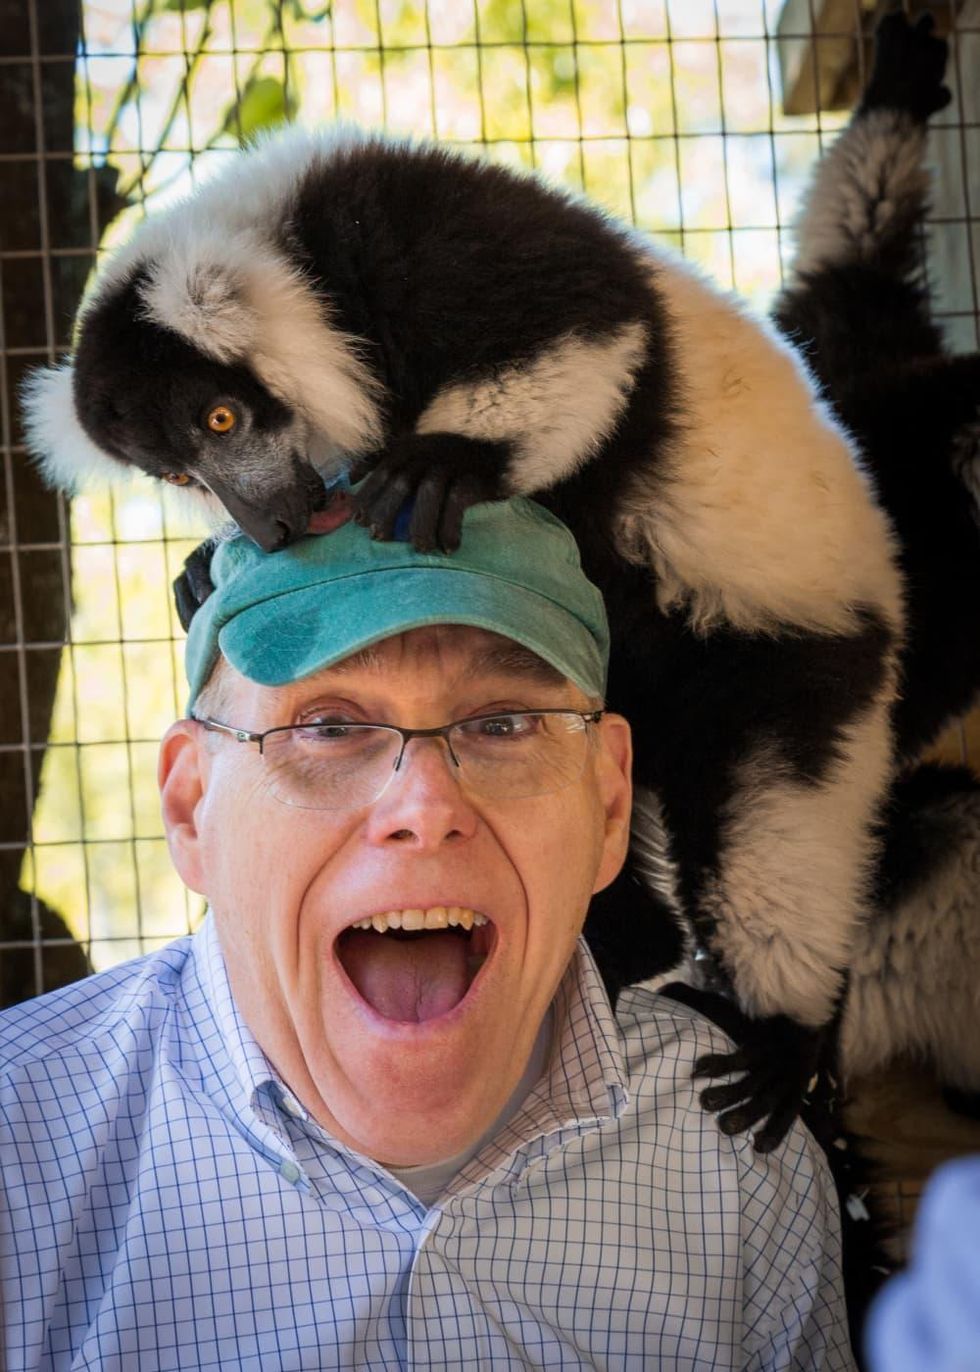 Man with a lemur on his head